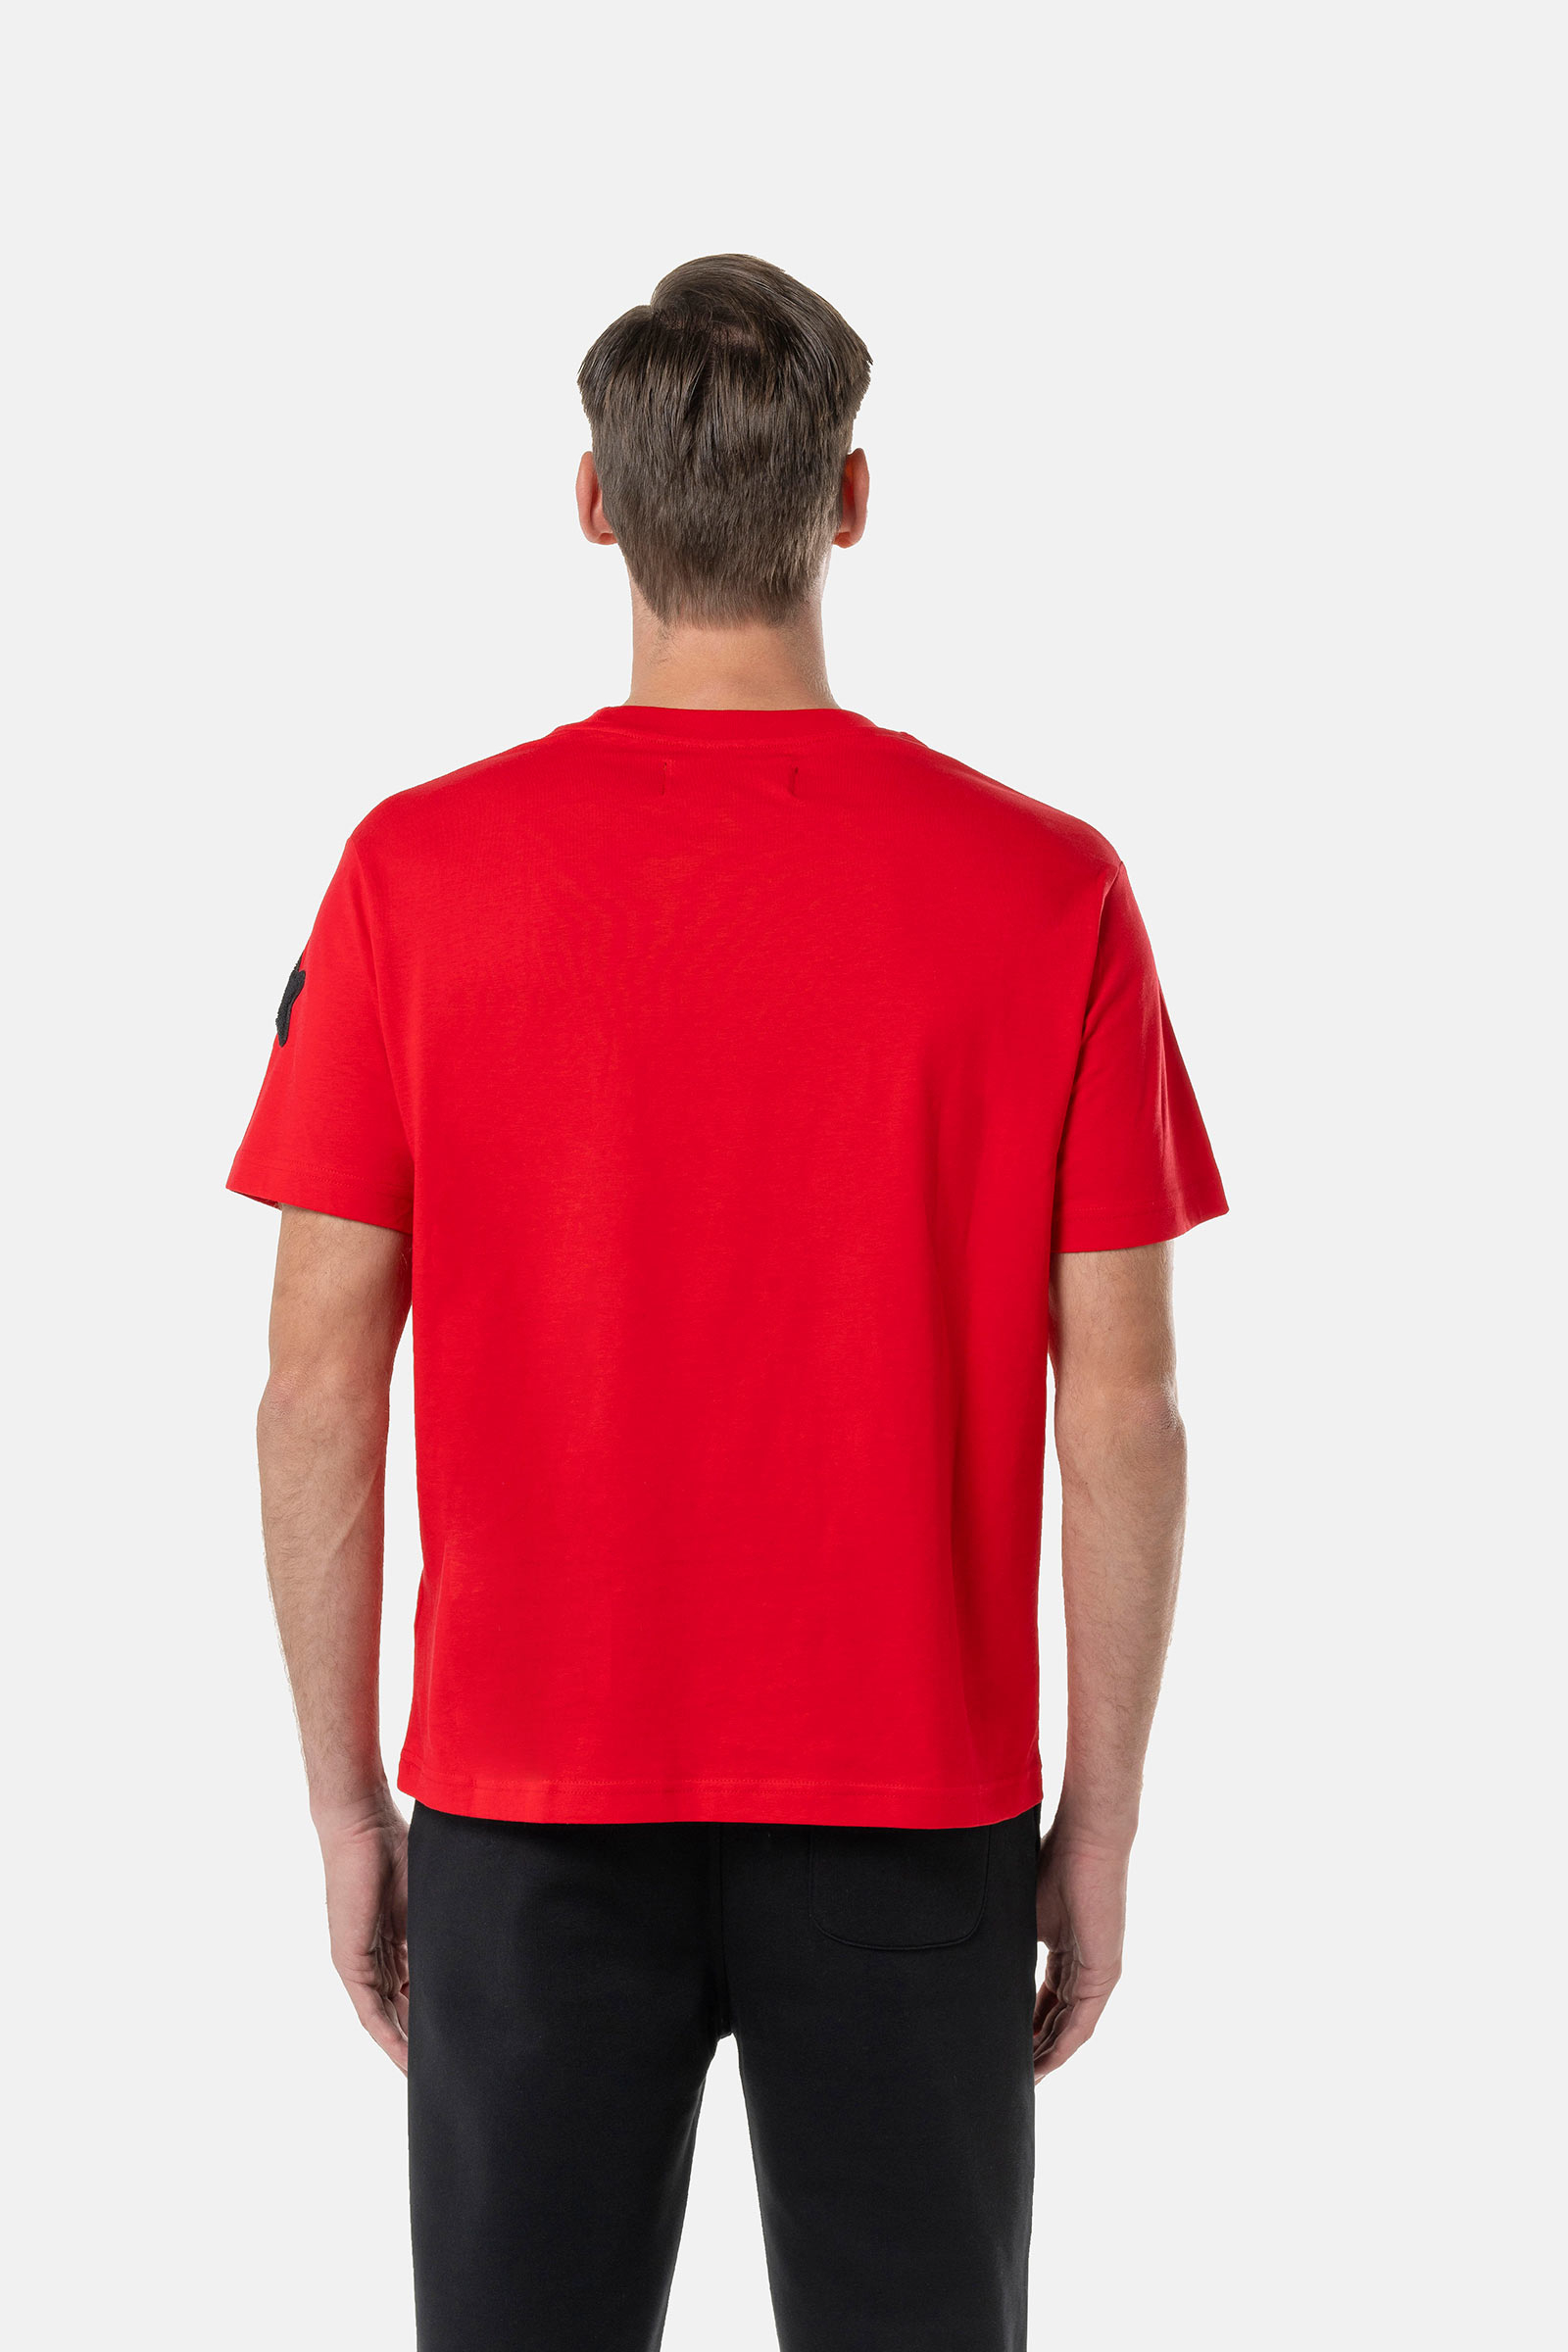 ICON SKULL T-SHIRT - RED - Hydrogen - Luxury Sportwear